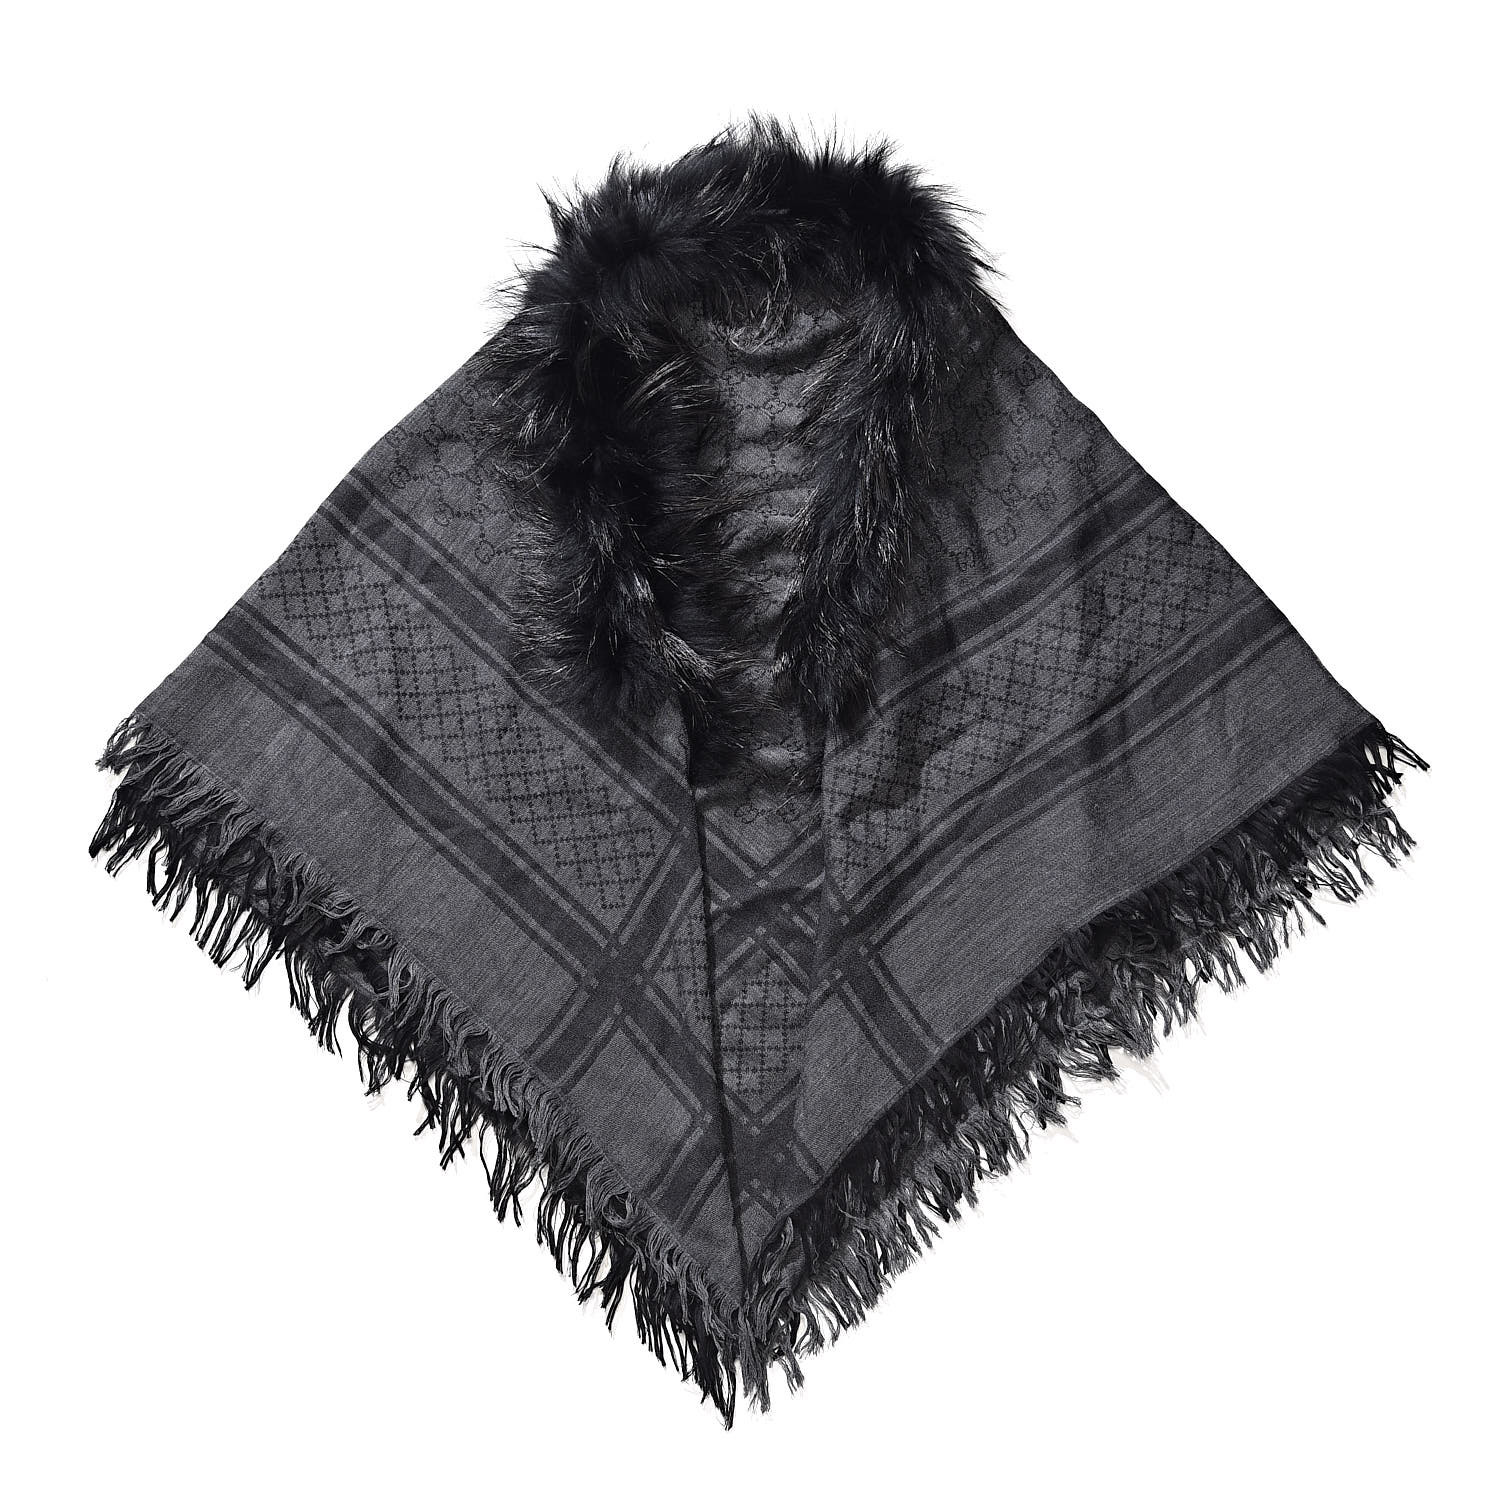 gucci shawl scarf